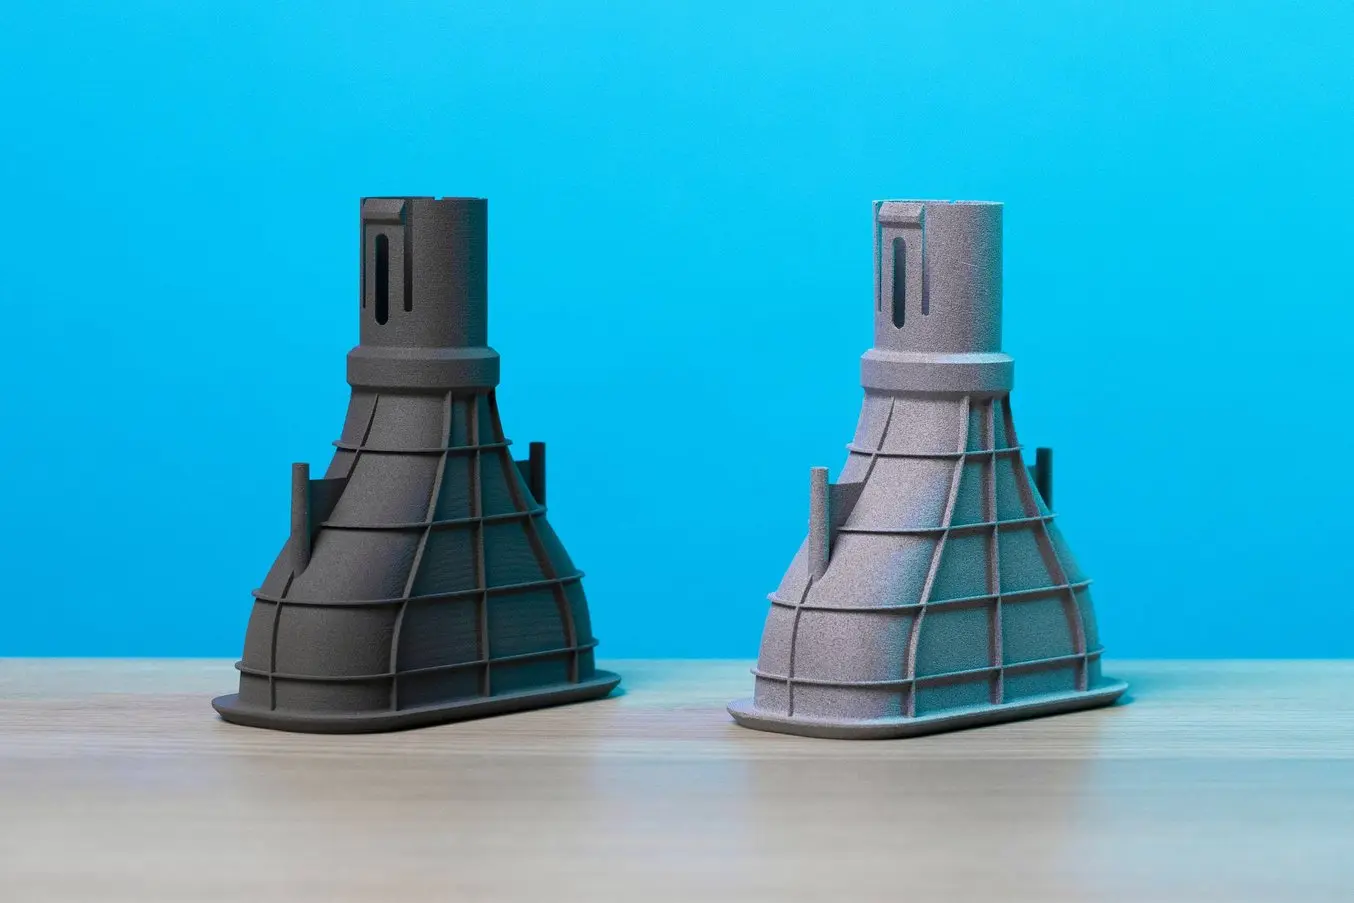 Kostenvergleich SLS-3D-gedruckter Teile – Prototyp eines Kfz-Krümmers – In-house vs. Fertigungsdienstleister (Outsourcing)